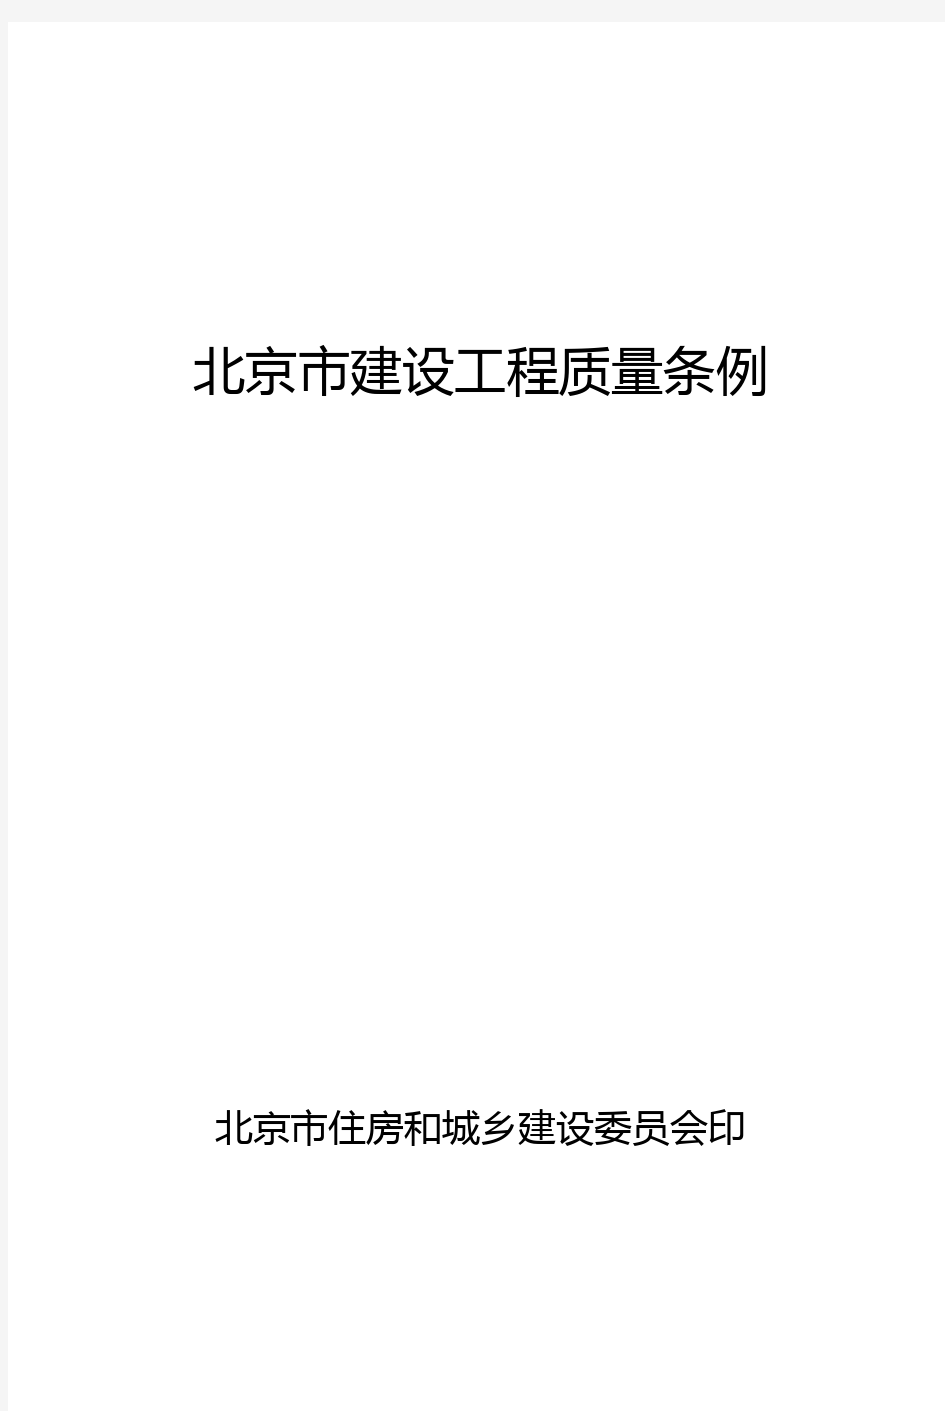 《北京市建设工程质量条例》(最新打印版)